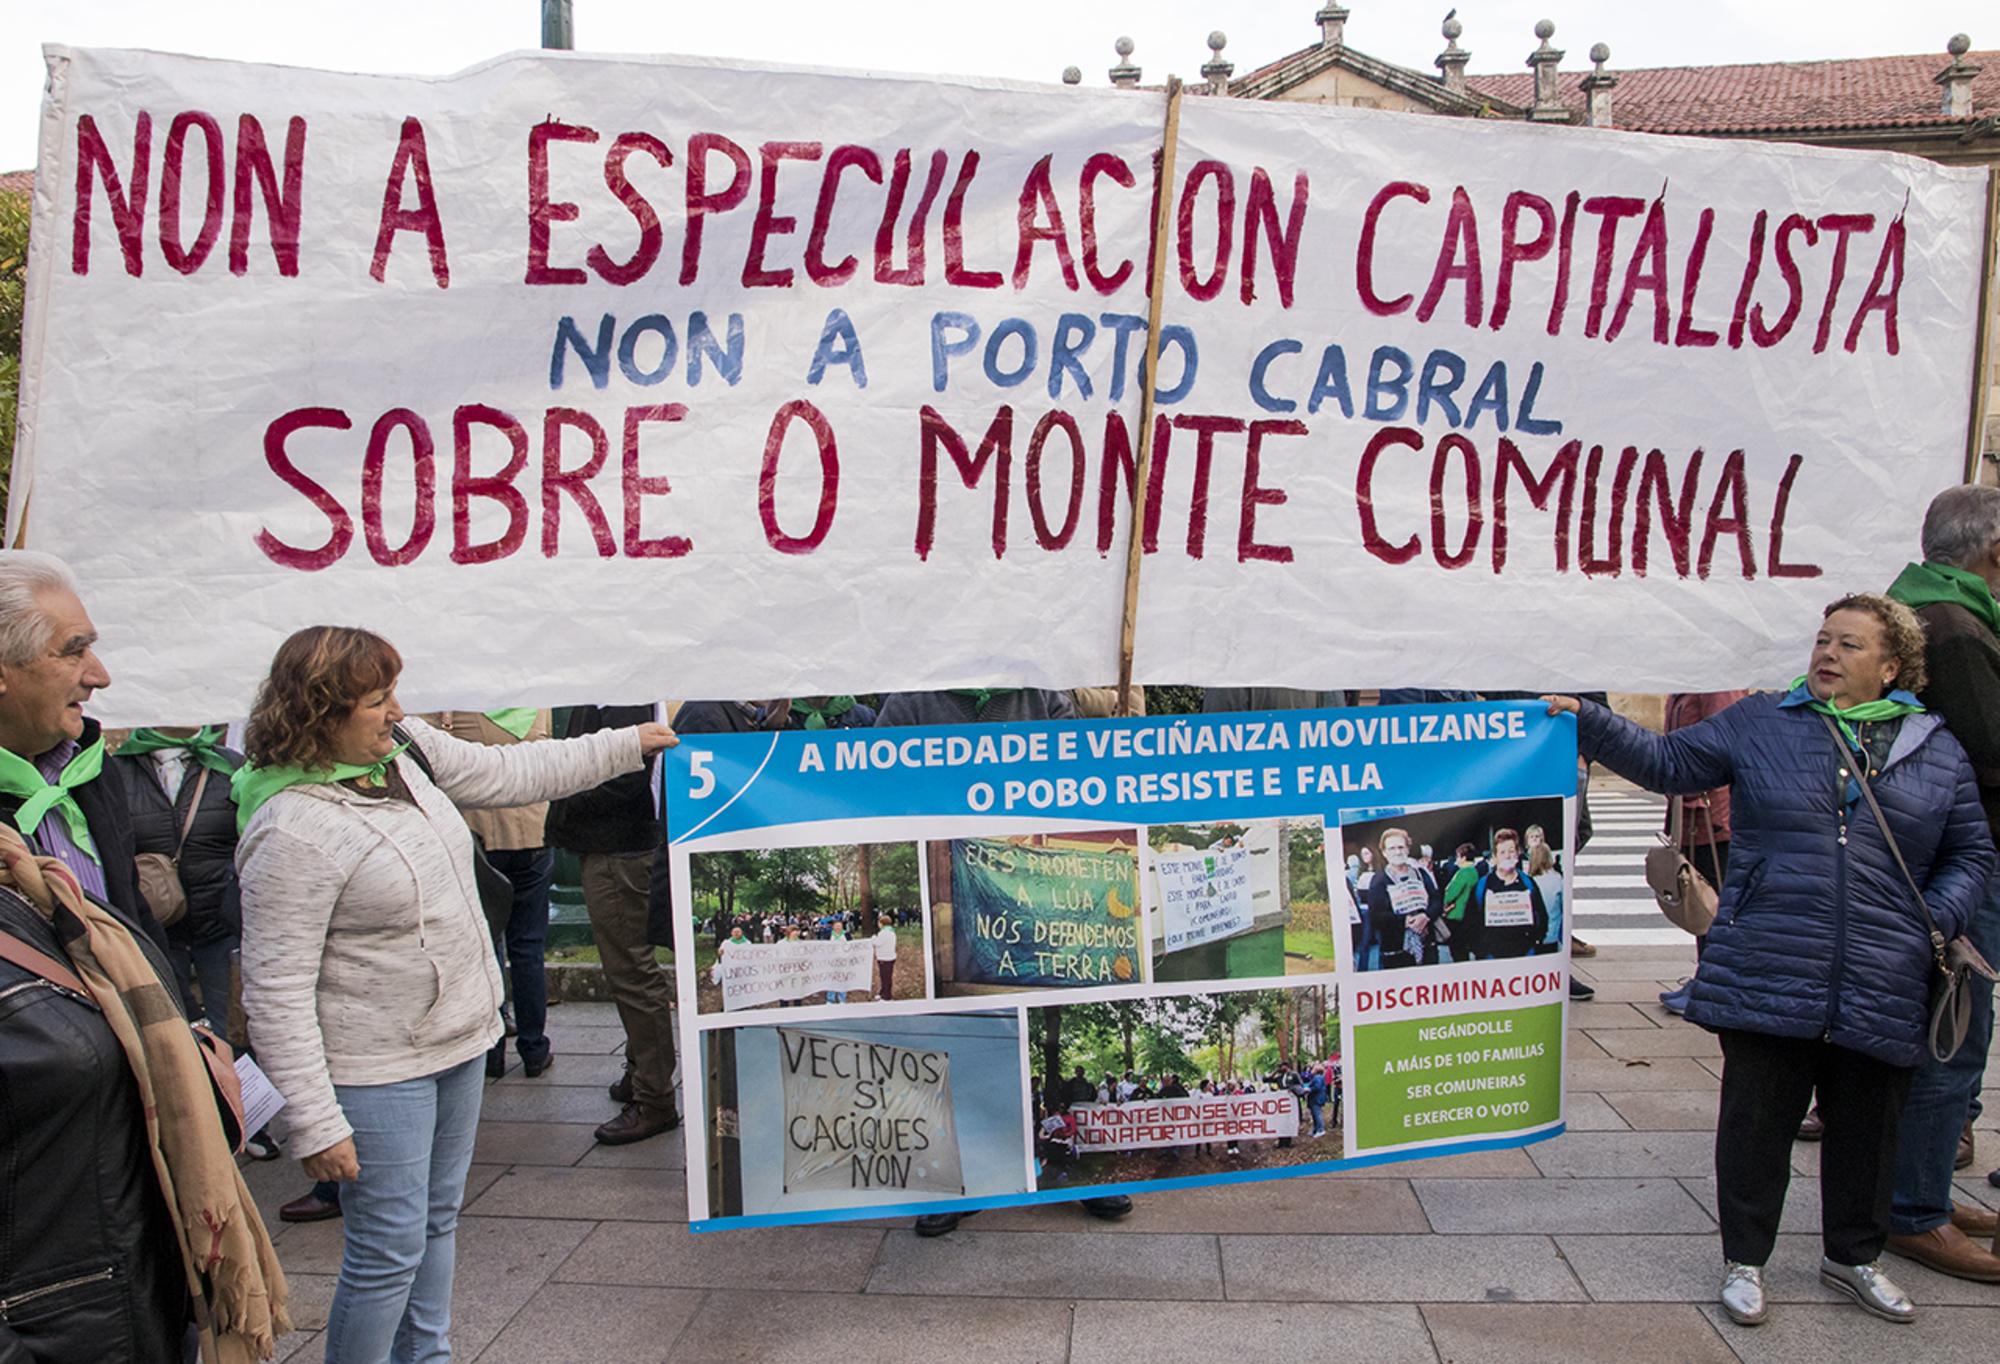 Protestas contra o grupo promotor do macrocentro de consumo.